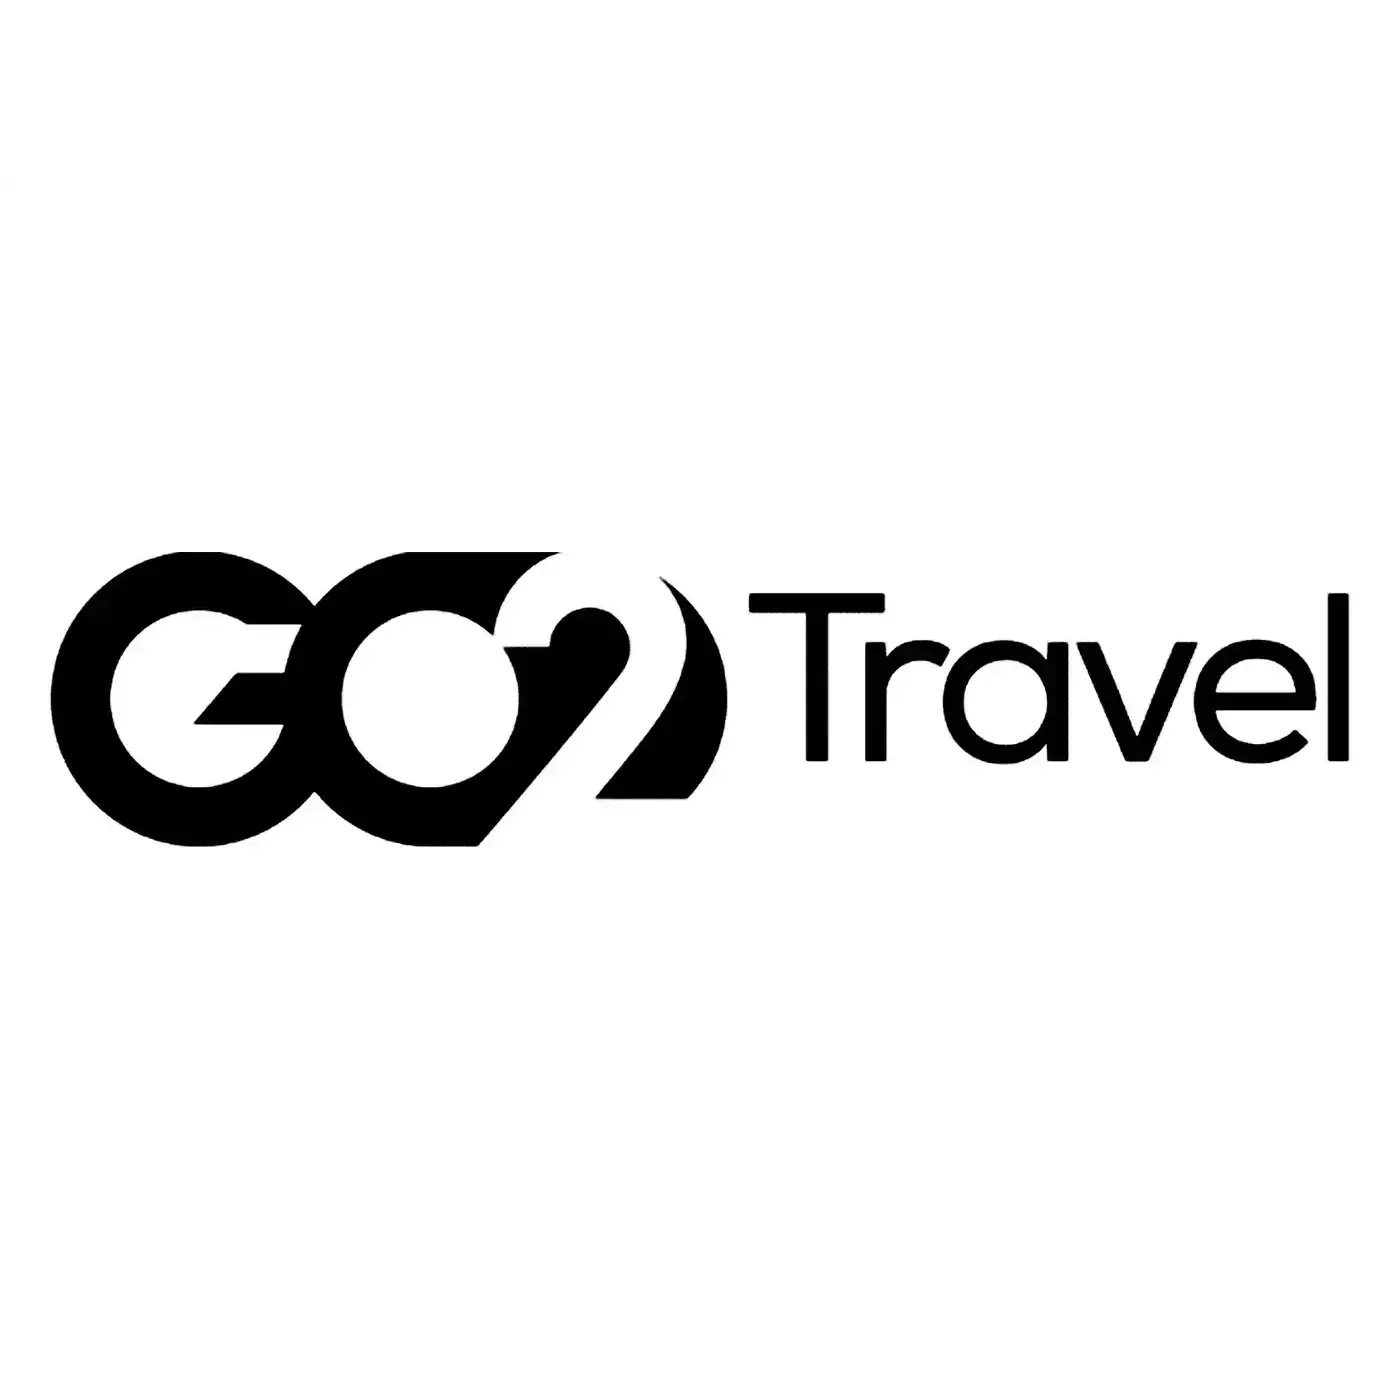 Go2 Travel